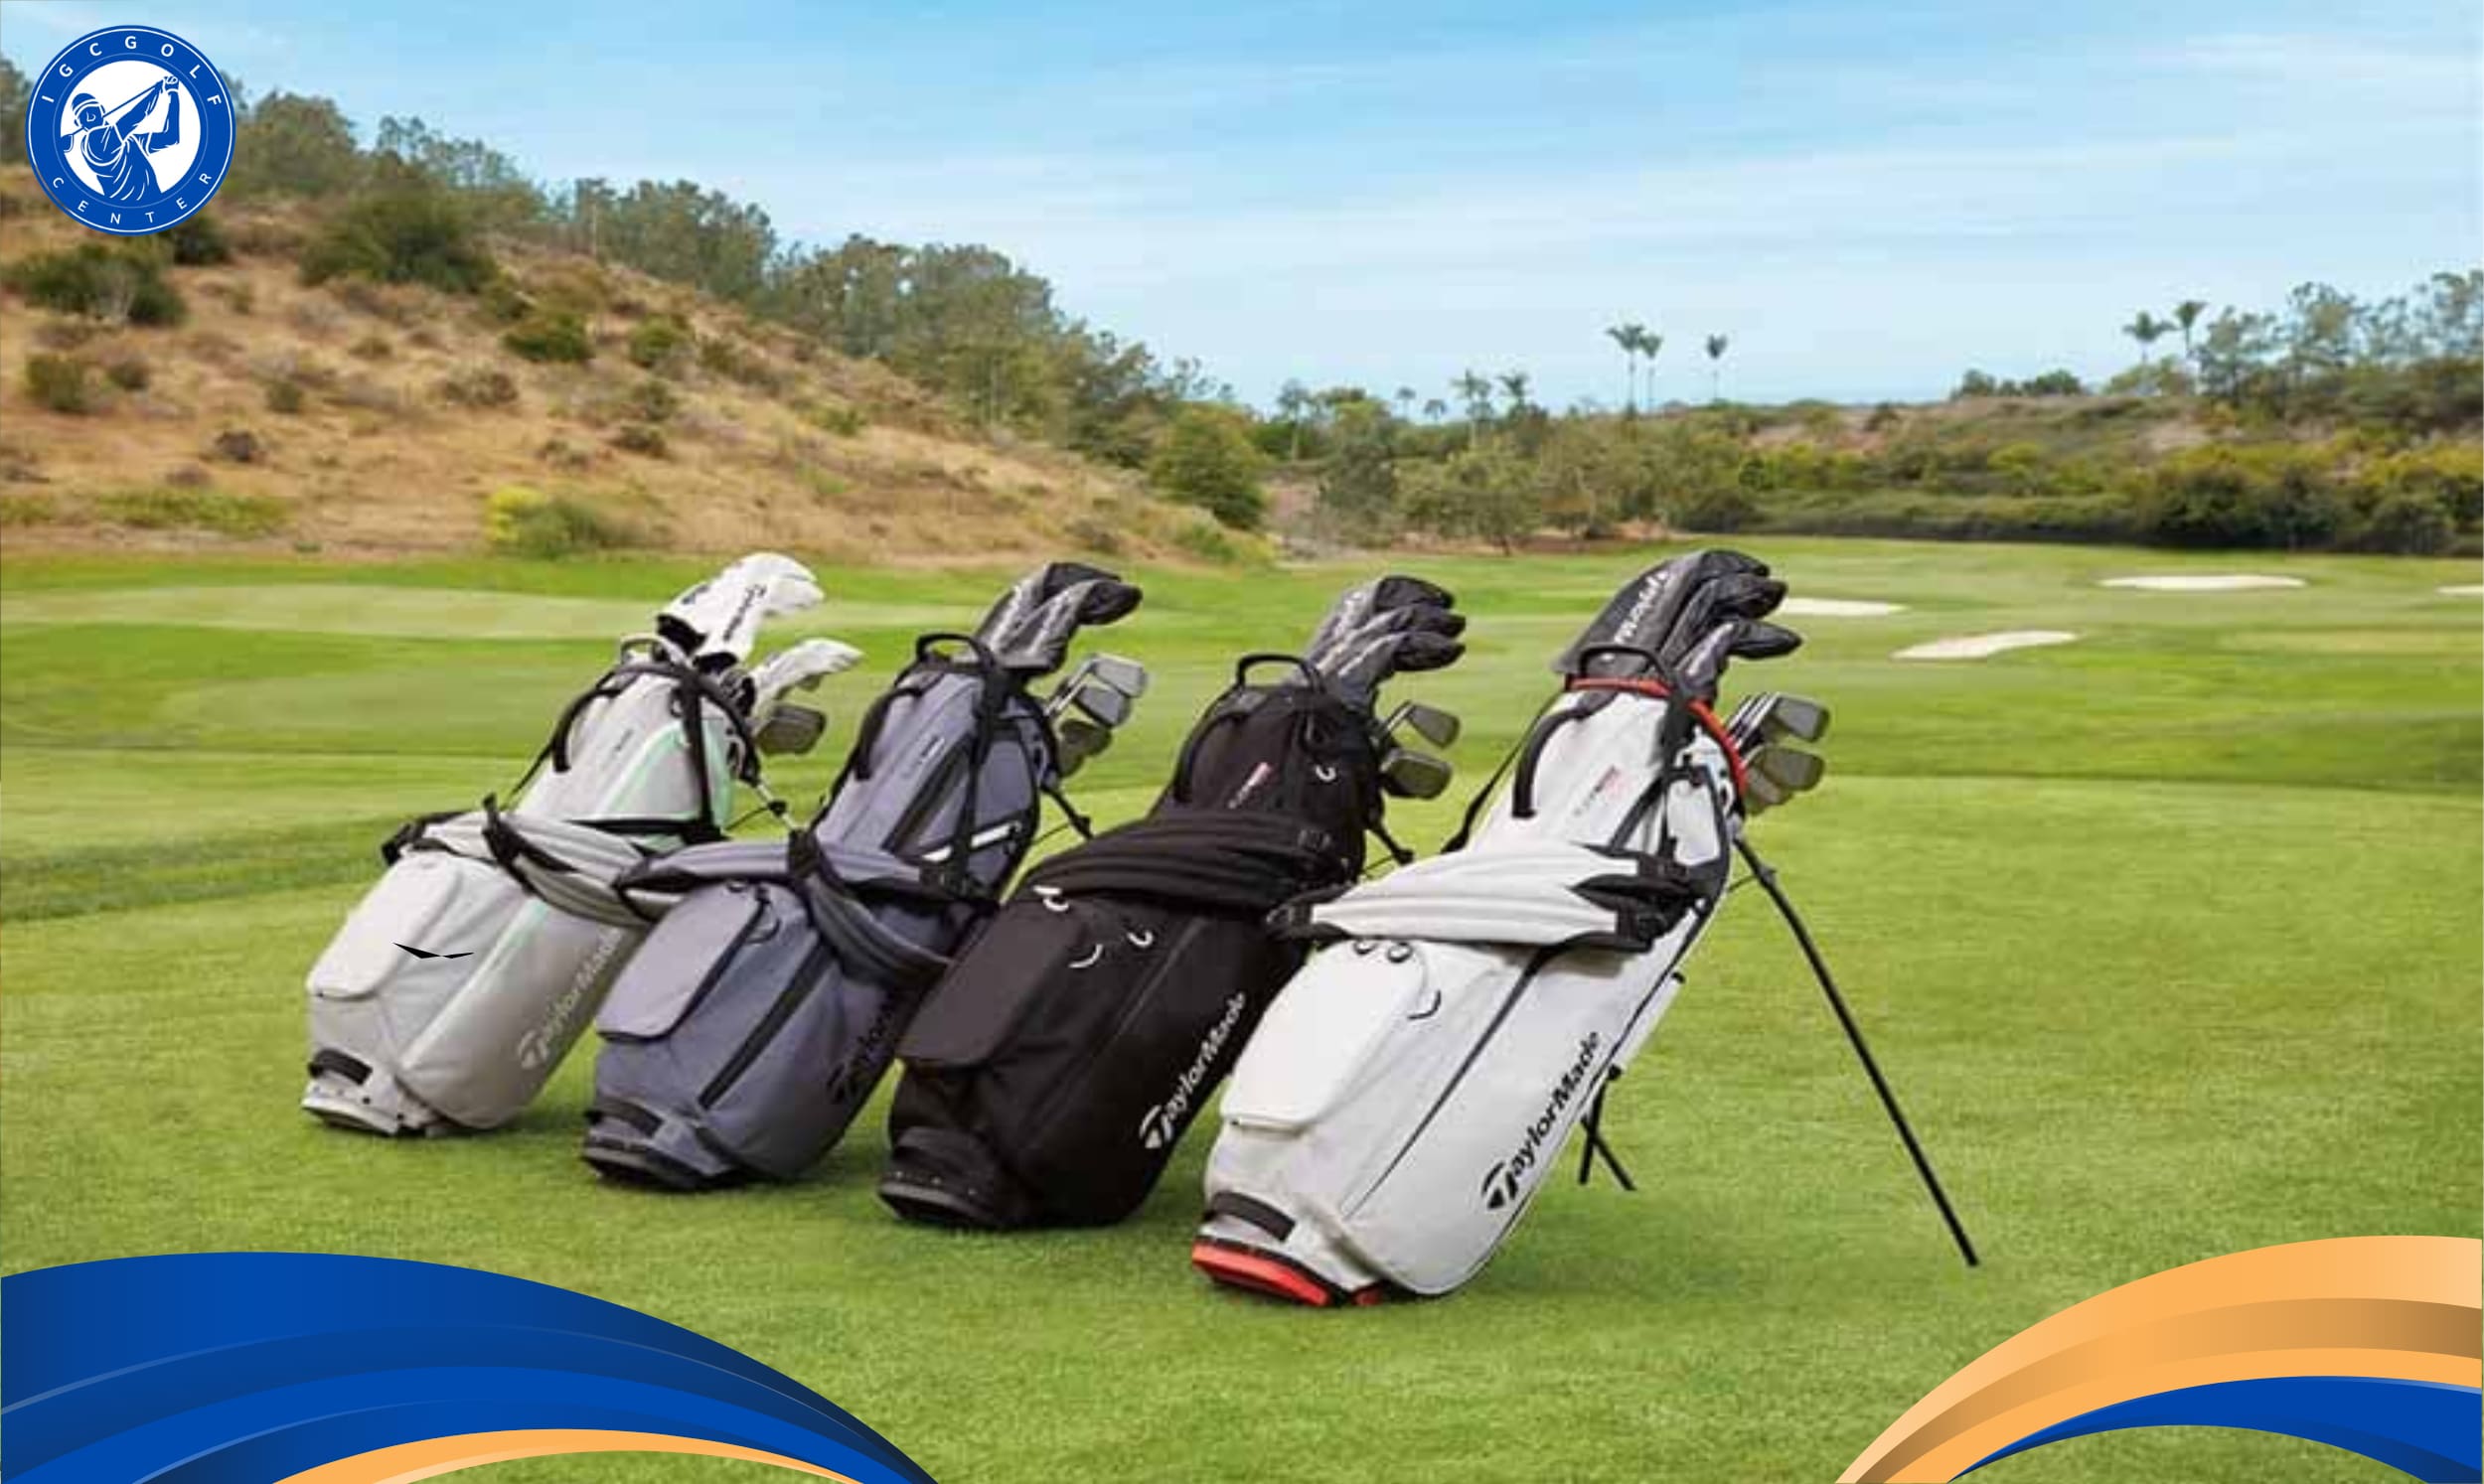 Tiêu chuẩn chọn túi gậy golf chuẩn theo lời khuyên chuyên gia